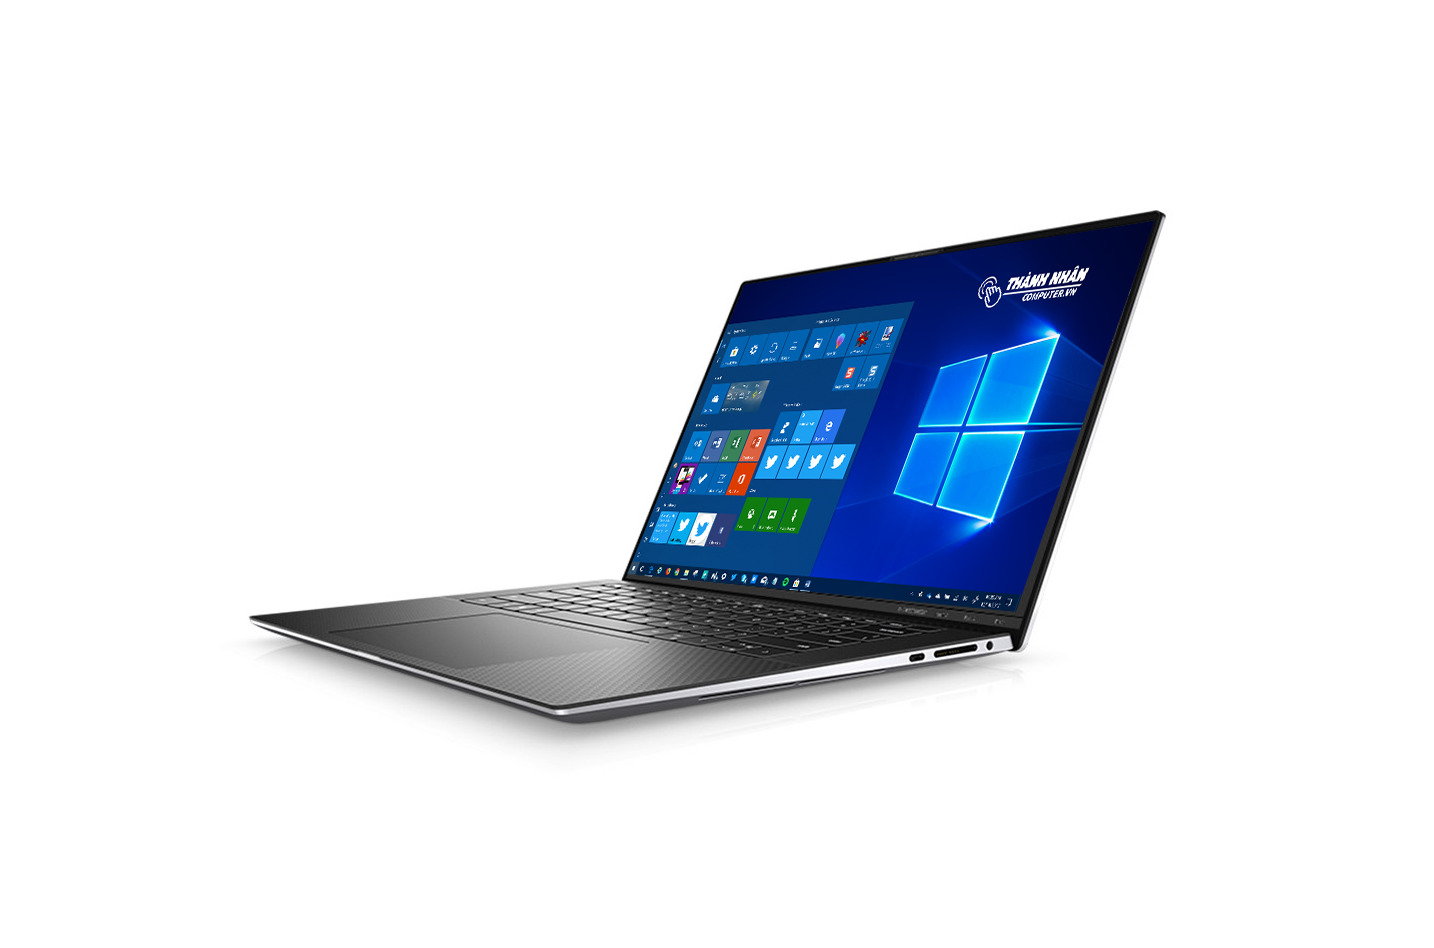 Laptop Dell XPS 15 9500 - Intel Core i7-10750H, 32GB RAM, SSD 1TB, Nvidia GeForce GTX 1650 Ti 4GB GDDR6, 15.6 inch